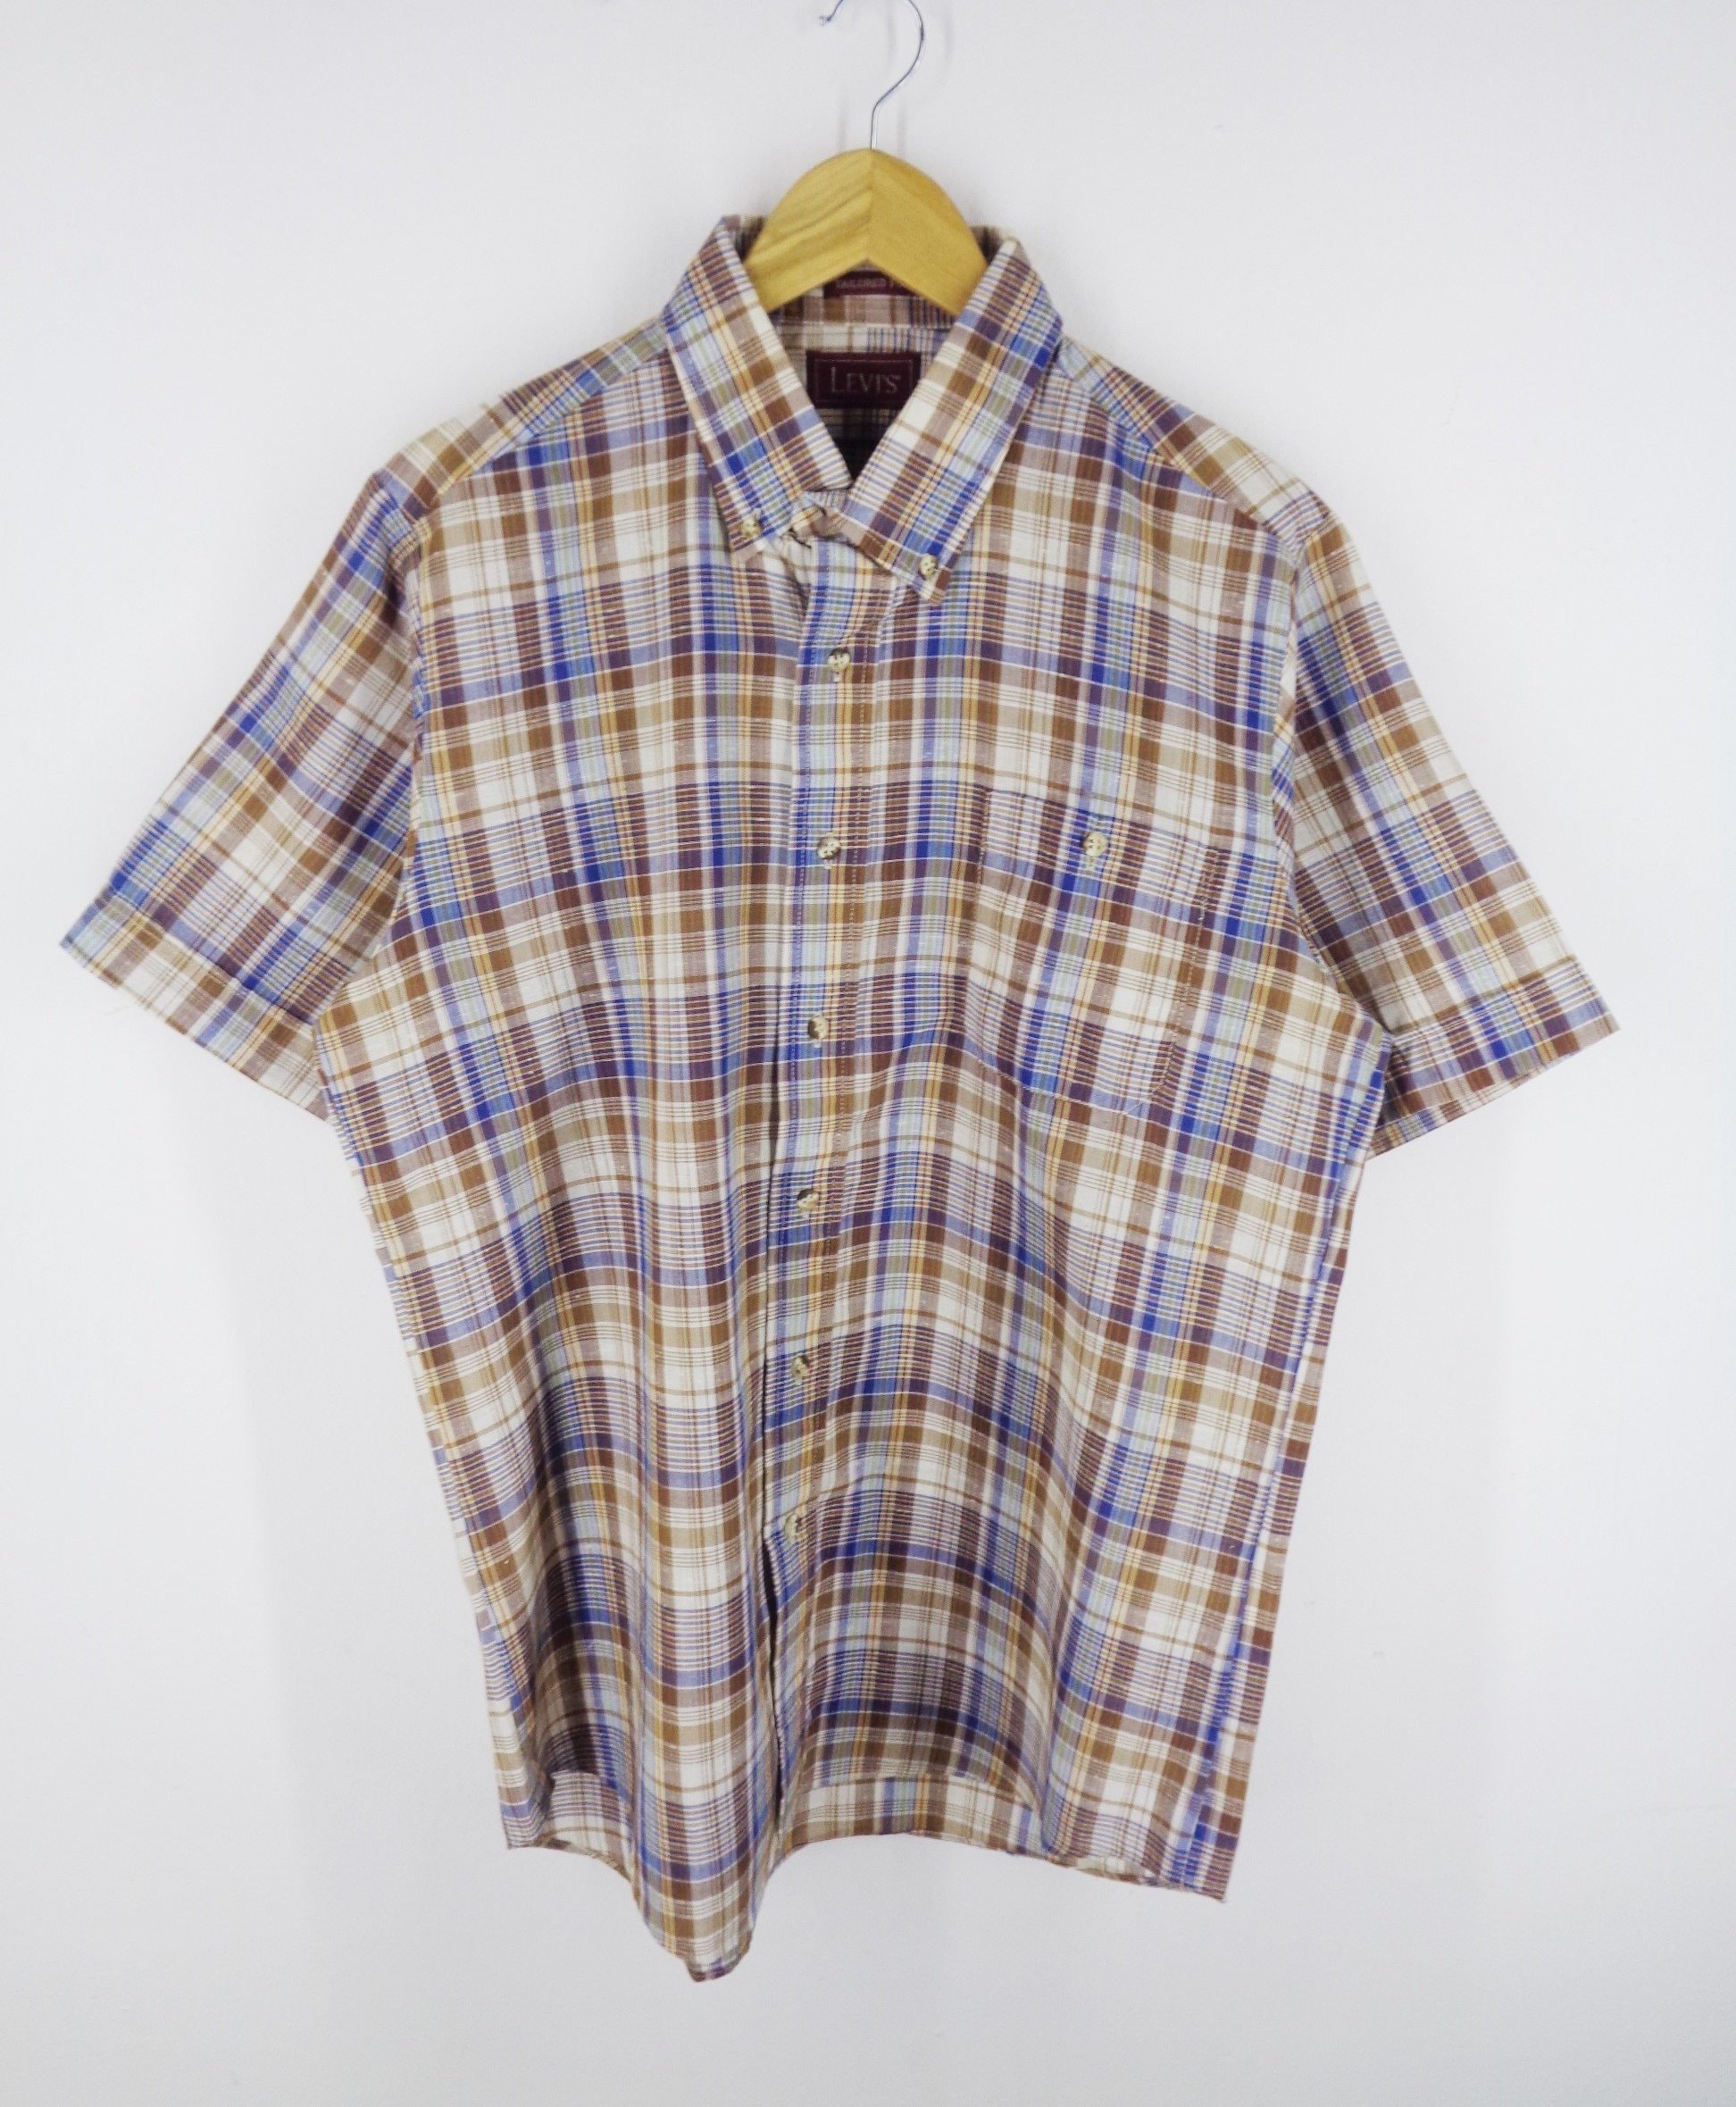 Levis Shirt Vintage Levis Button Shirt Levis Original Wear | Etsy